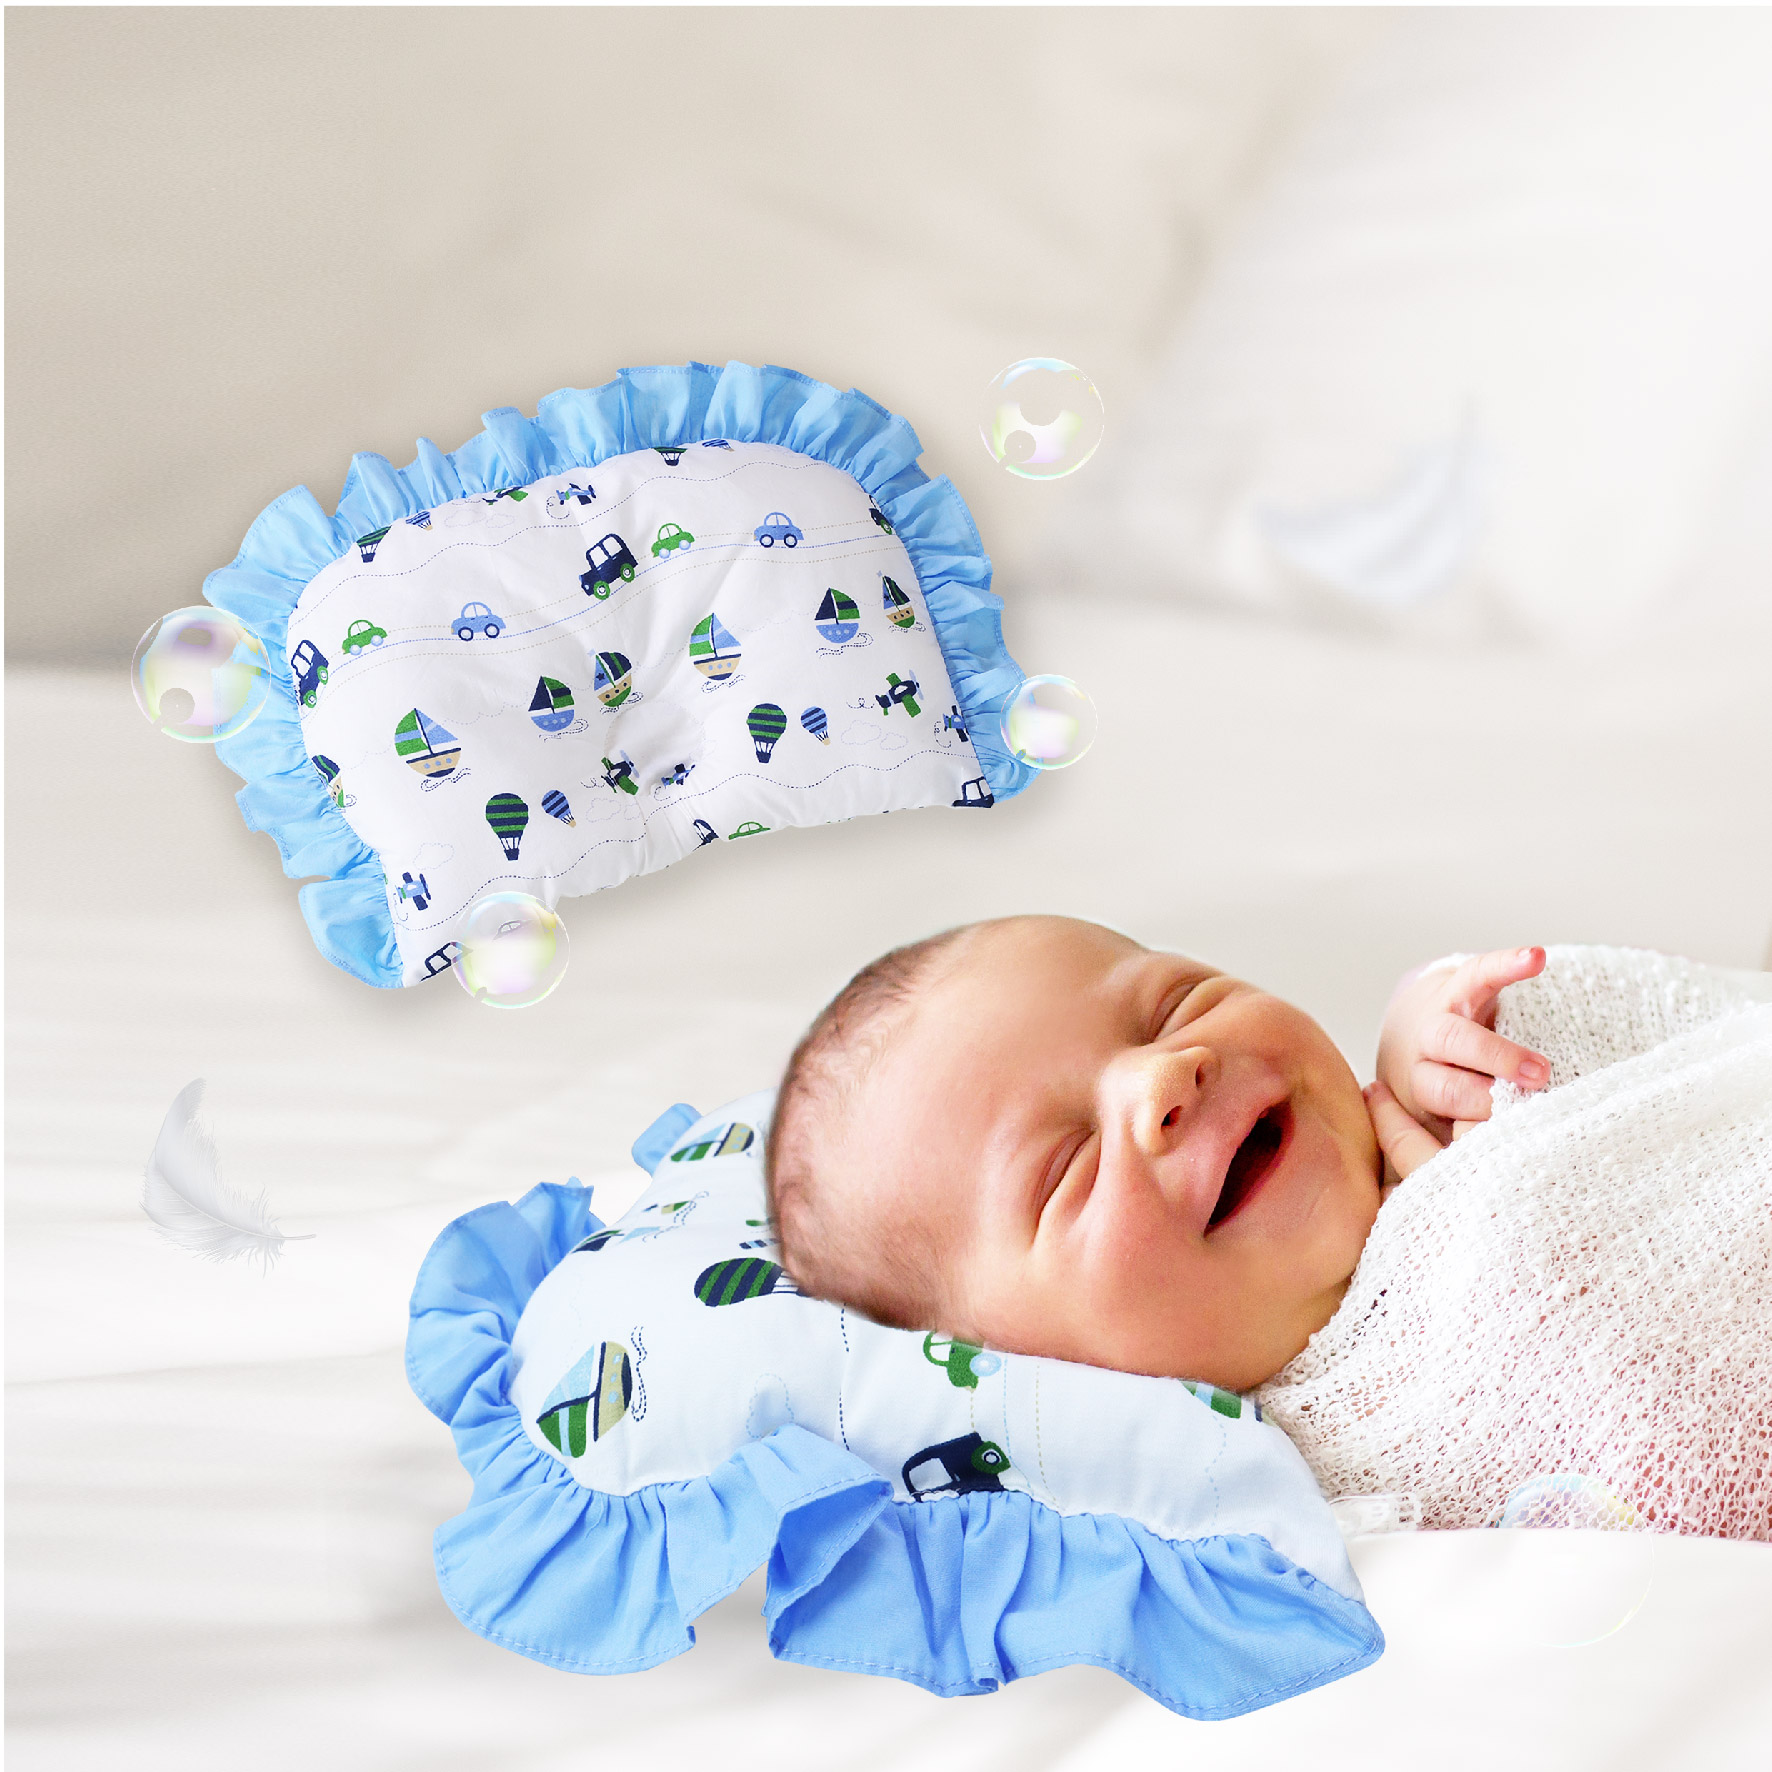 Babylove Premium Newborn Dimple Pillow (20.3cm x 30.5cm)